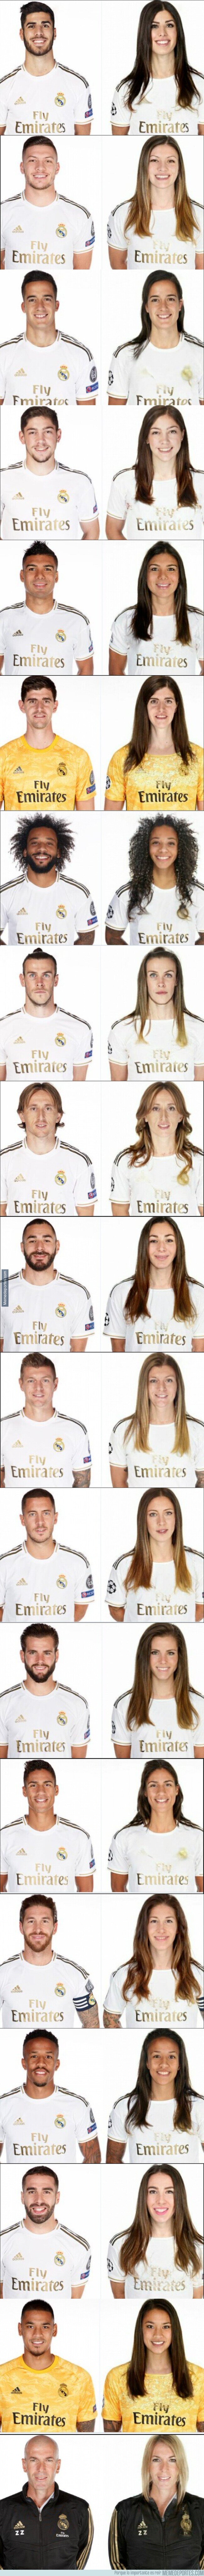 1106552 - Así sería la versión femenina de todos los jugadores del Real Madrid con la que todo el mundo se está riendo